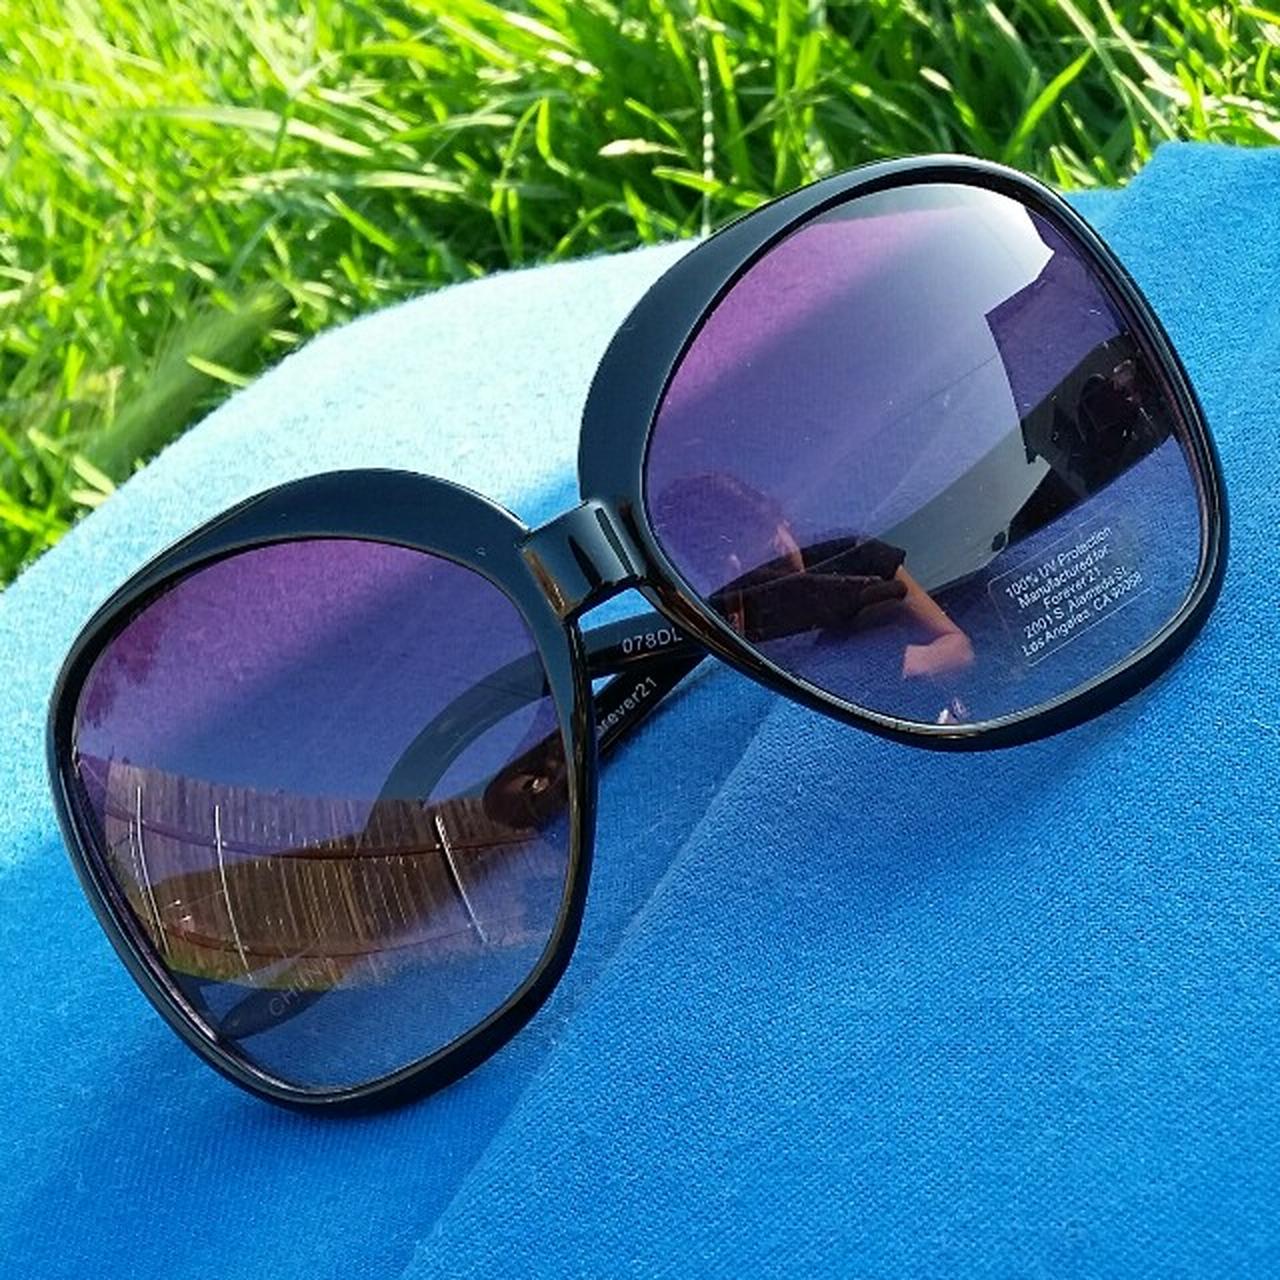 New black forever 21 sunglasses. Never worn. 😁 - Depop